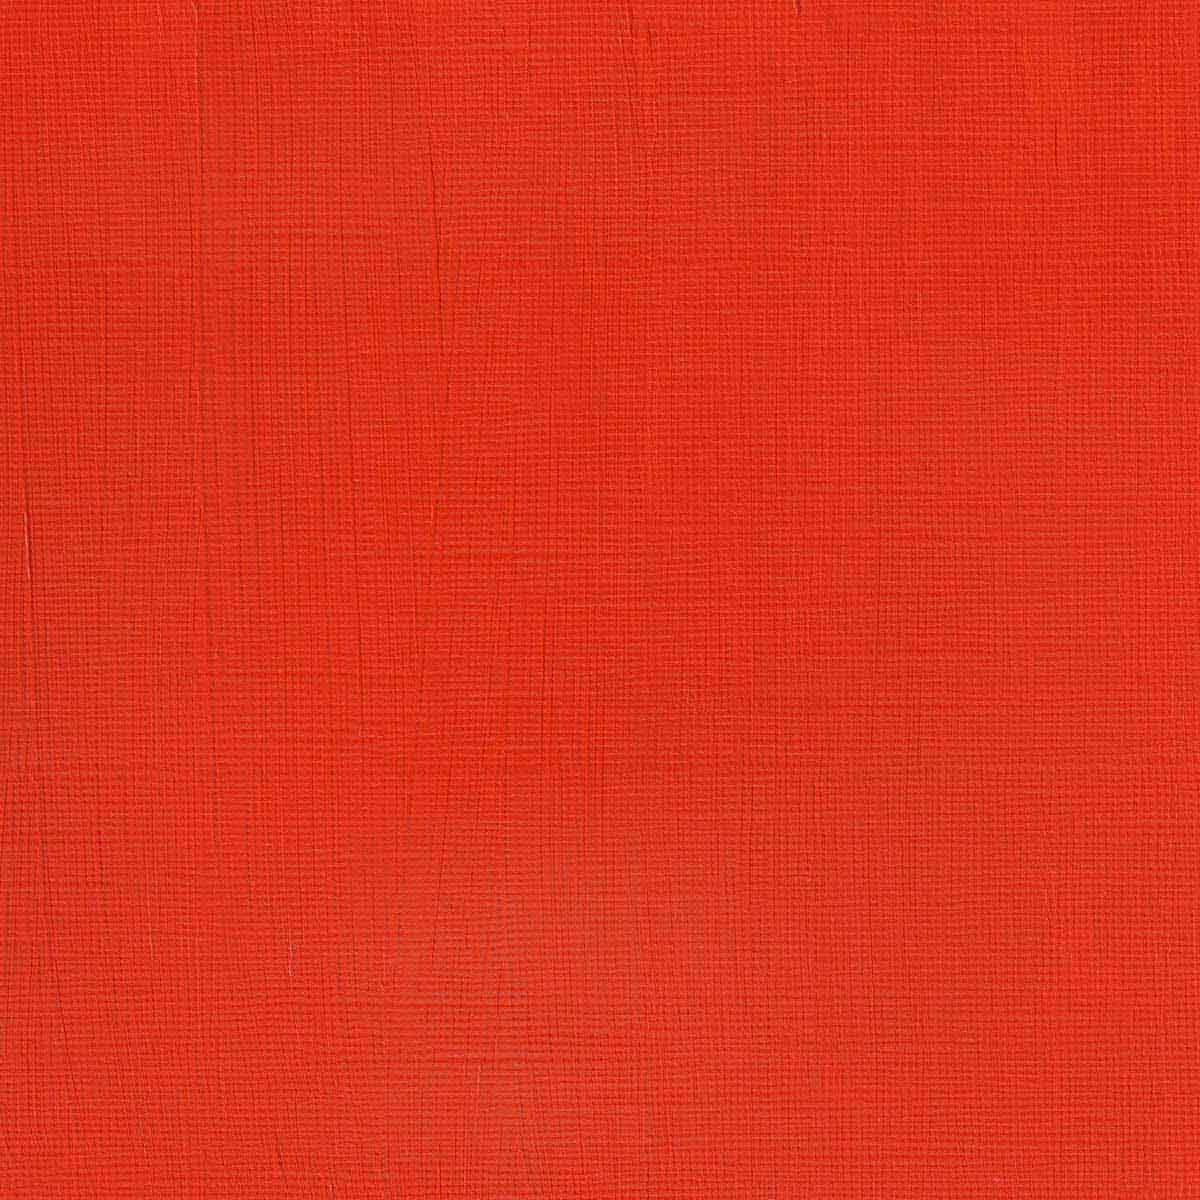 Winsor e Newton - Colore acrilico degli artisti professionisti - 60 ml - Luce rossa del cadmio